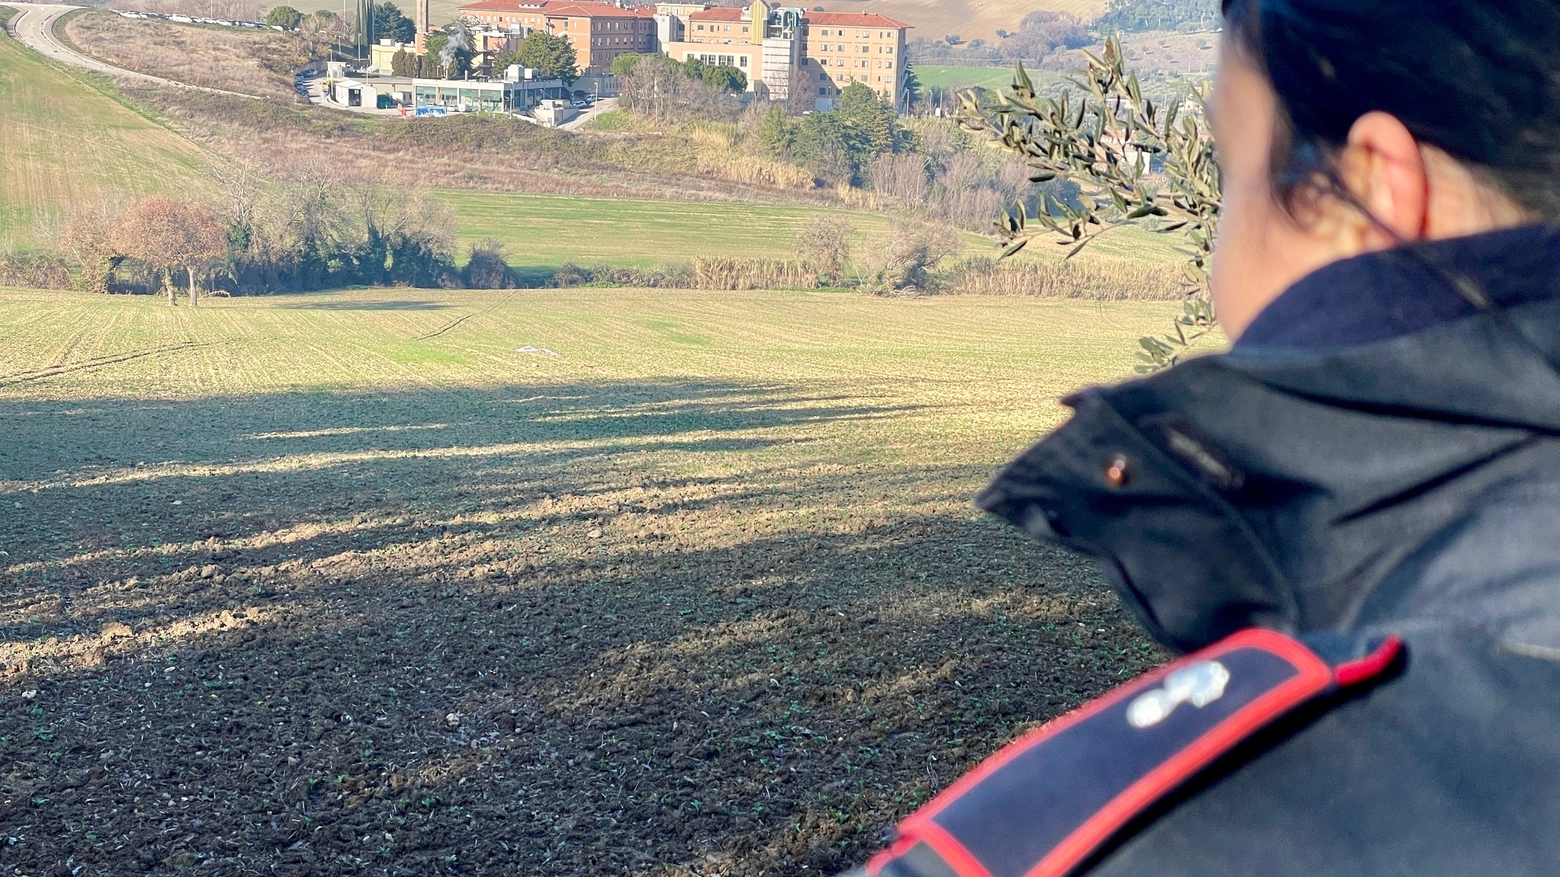 Una bomba a mano bellica è stata trovata nelle campagne di Civitanova Marche (Foto De Marco)